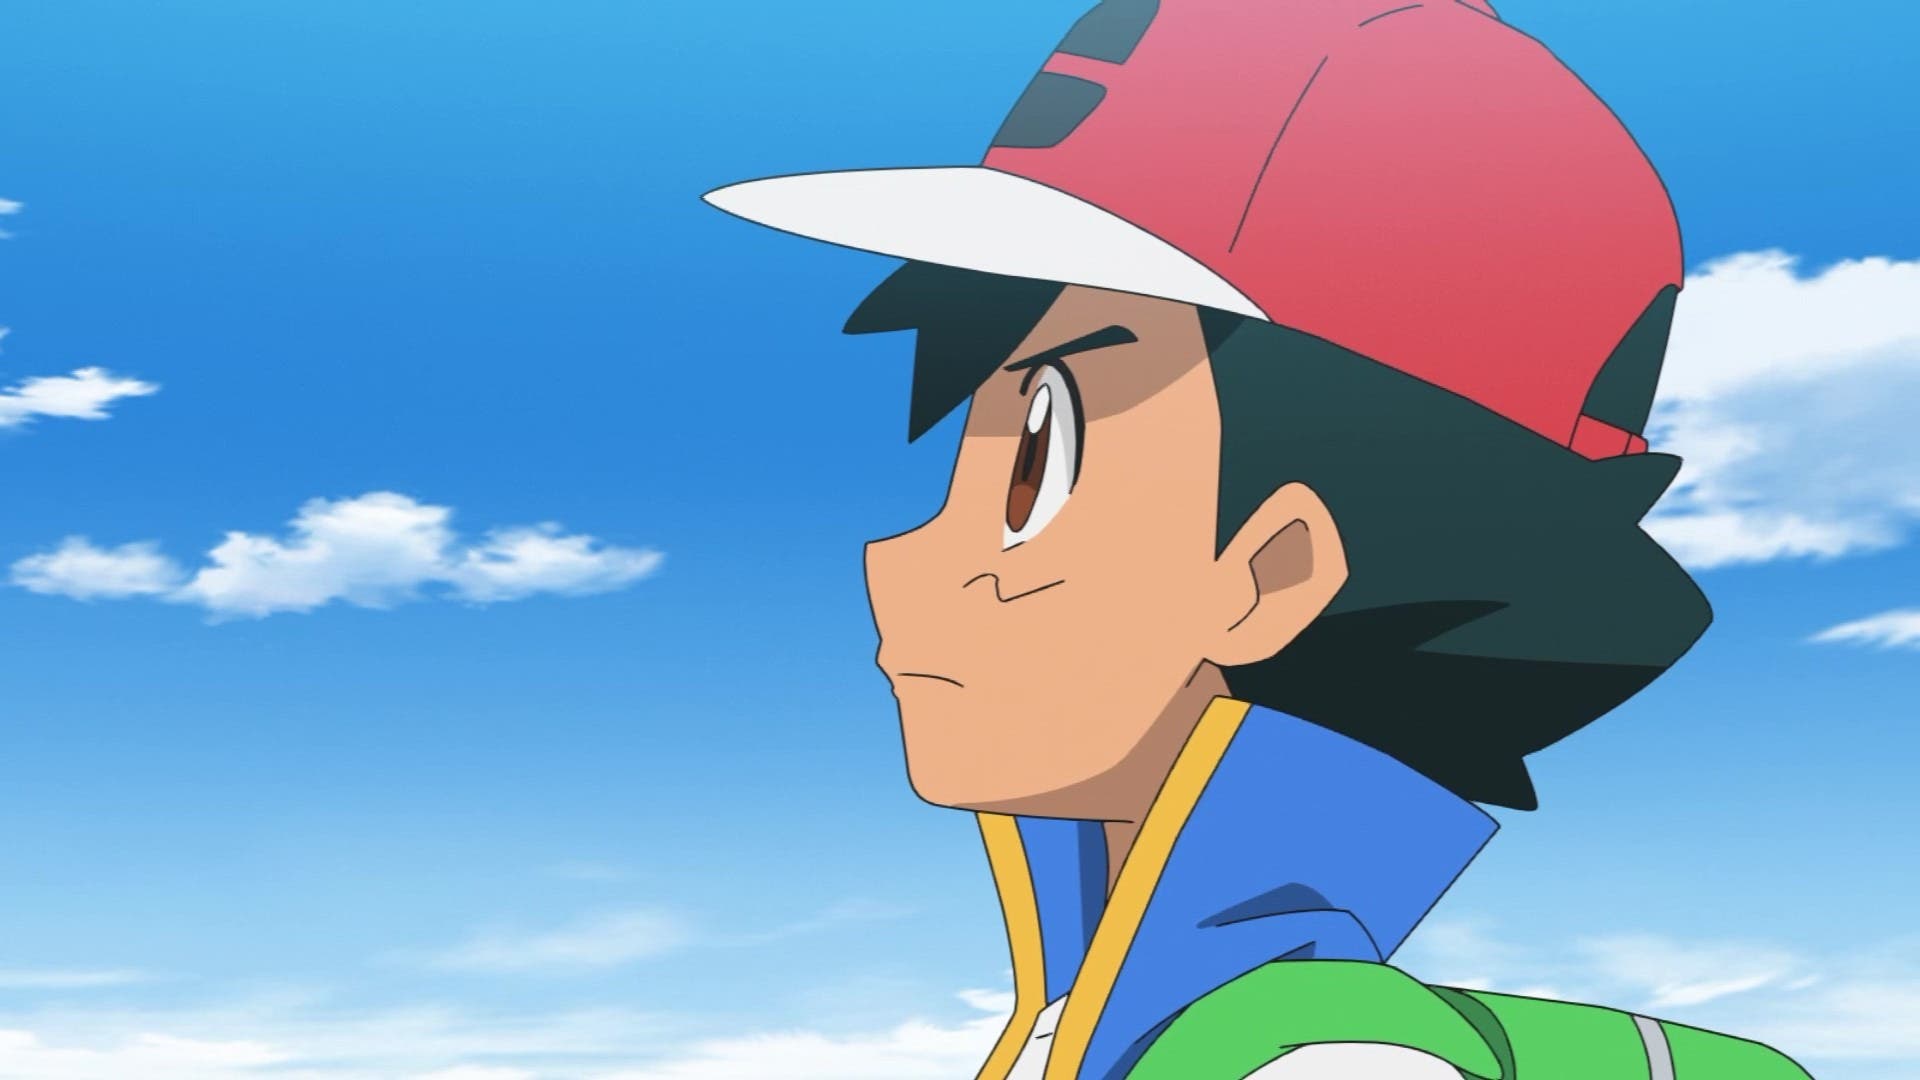 Sigue aquí el último episodio de Ash en el anime Pokémon que está a punto de comenzar